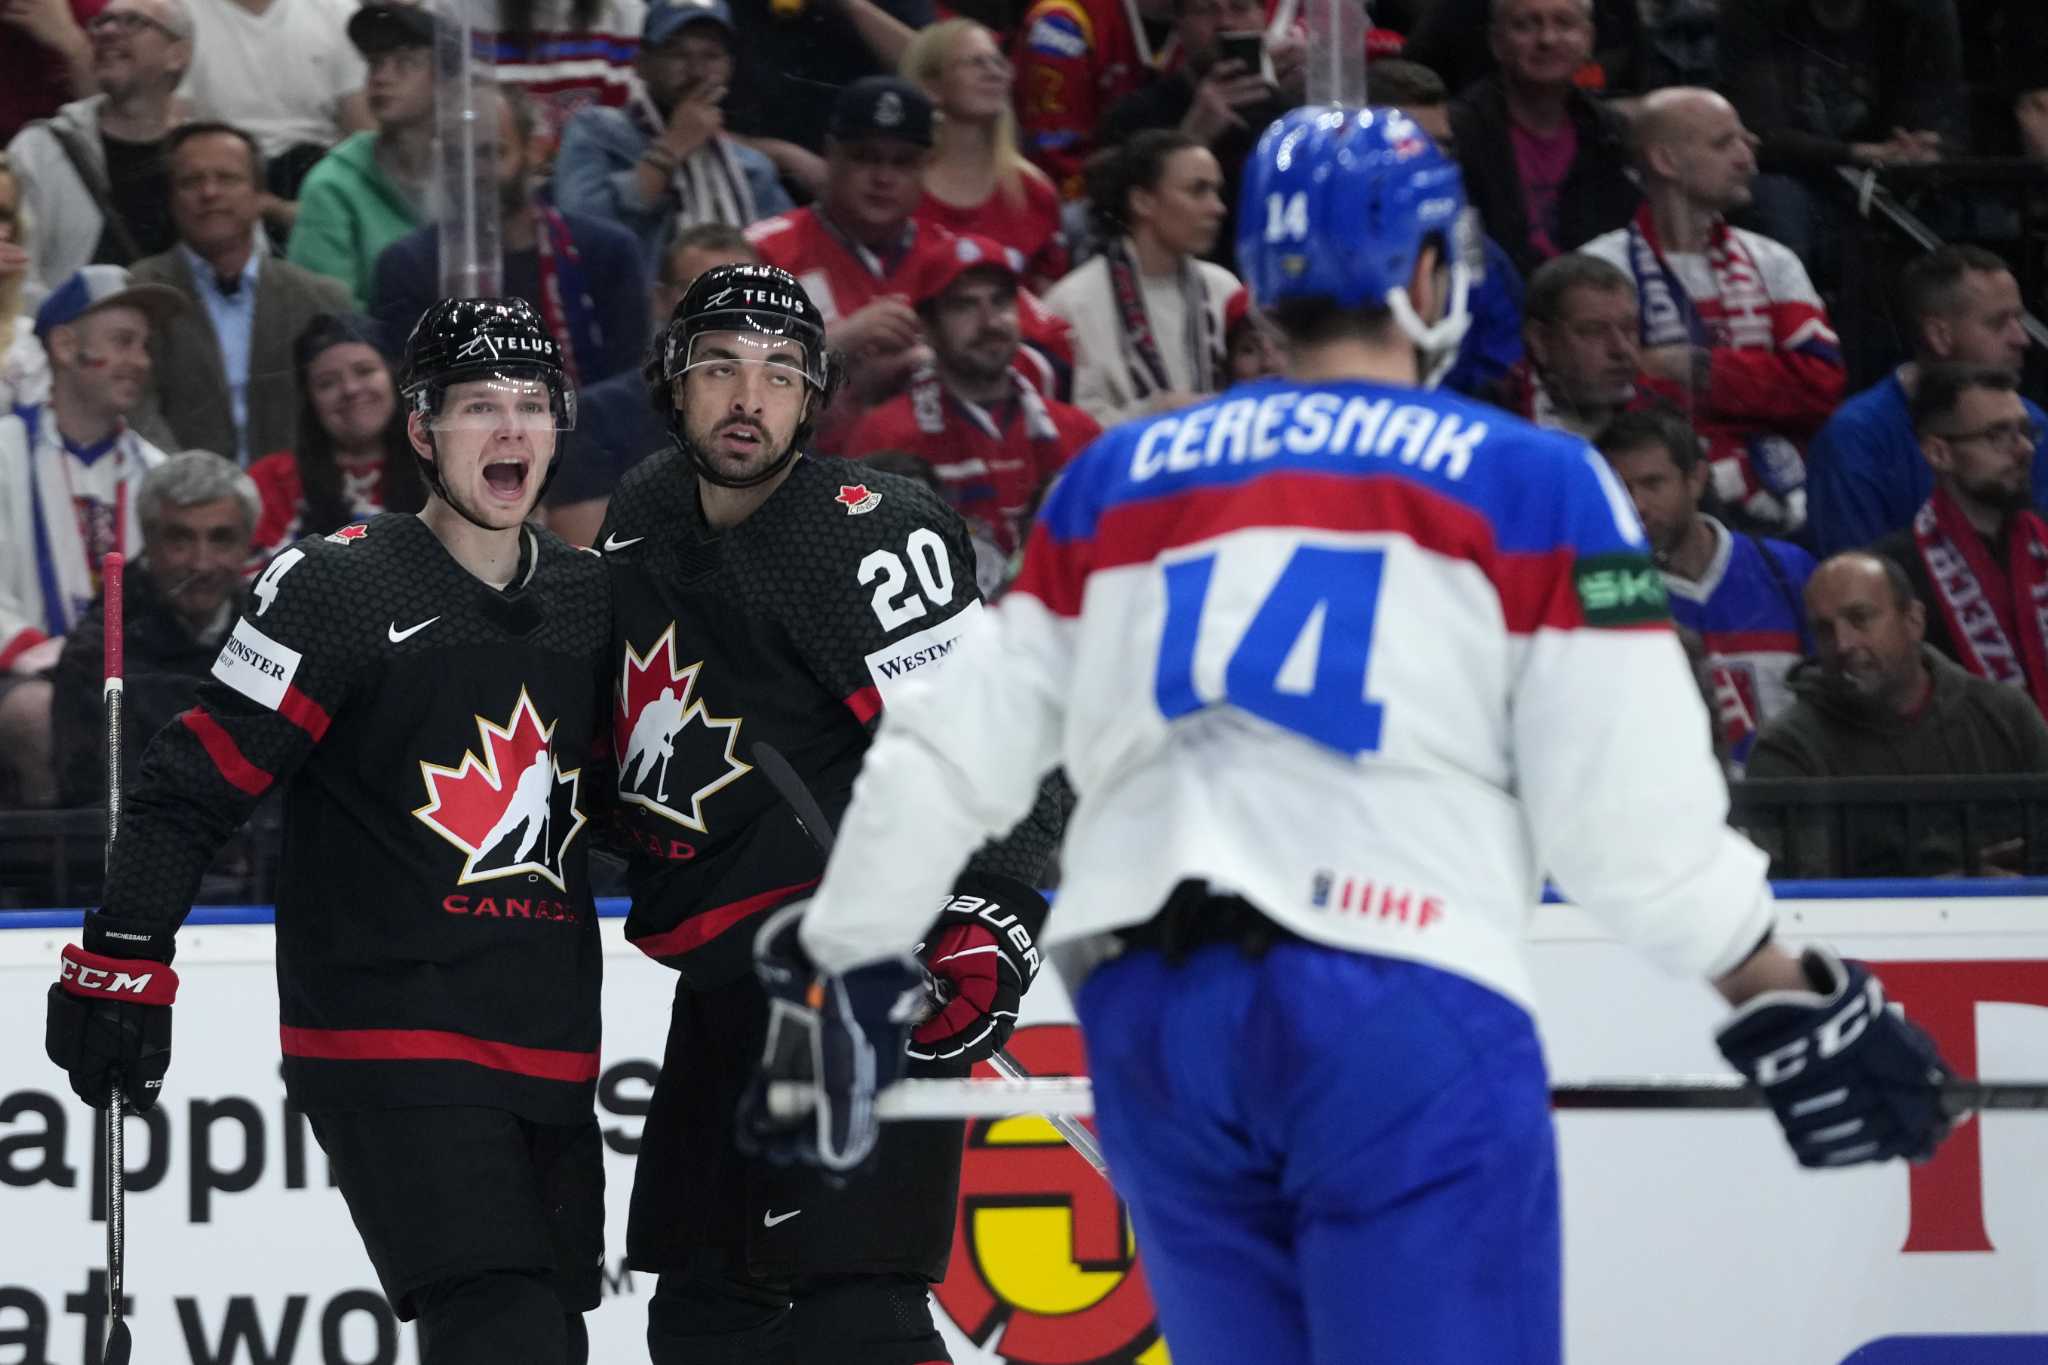 Canada beats Slovakia 6-3, Switzerland tops Germany 3-1 to reach semifinals at hockey worlds